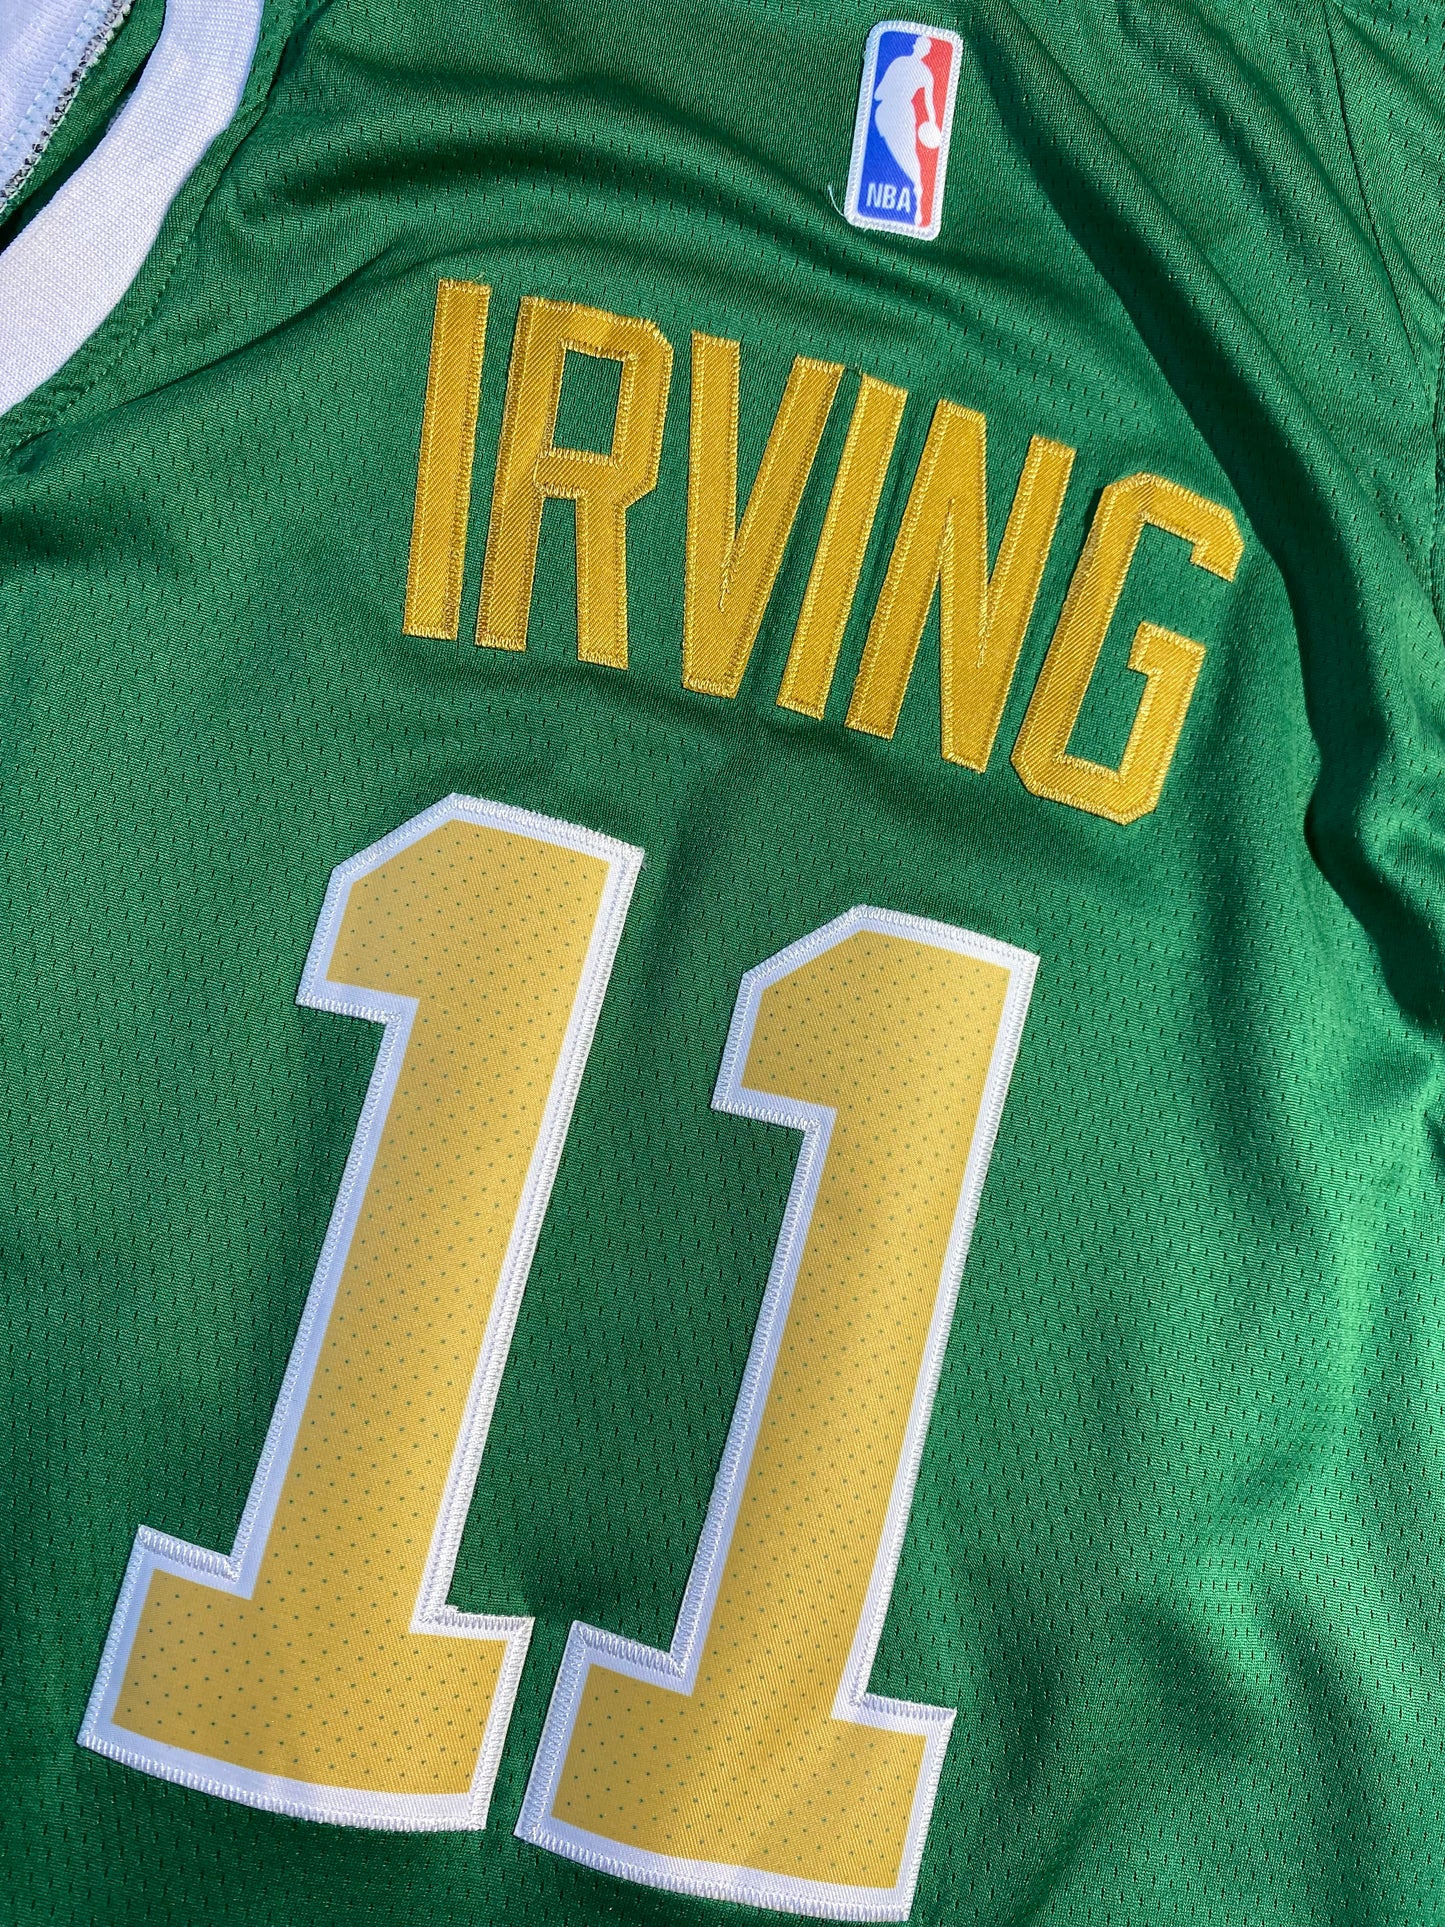 Vintage Kyrie Irving Jersey Celtics Nike